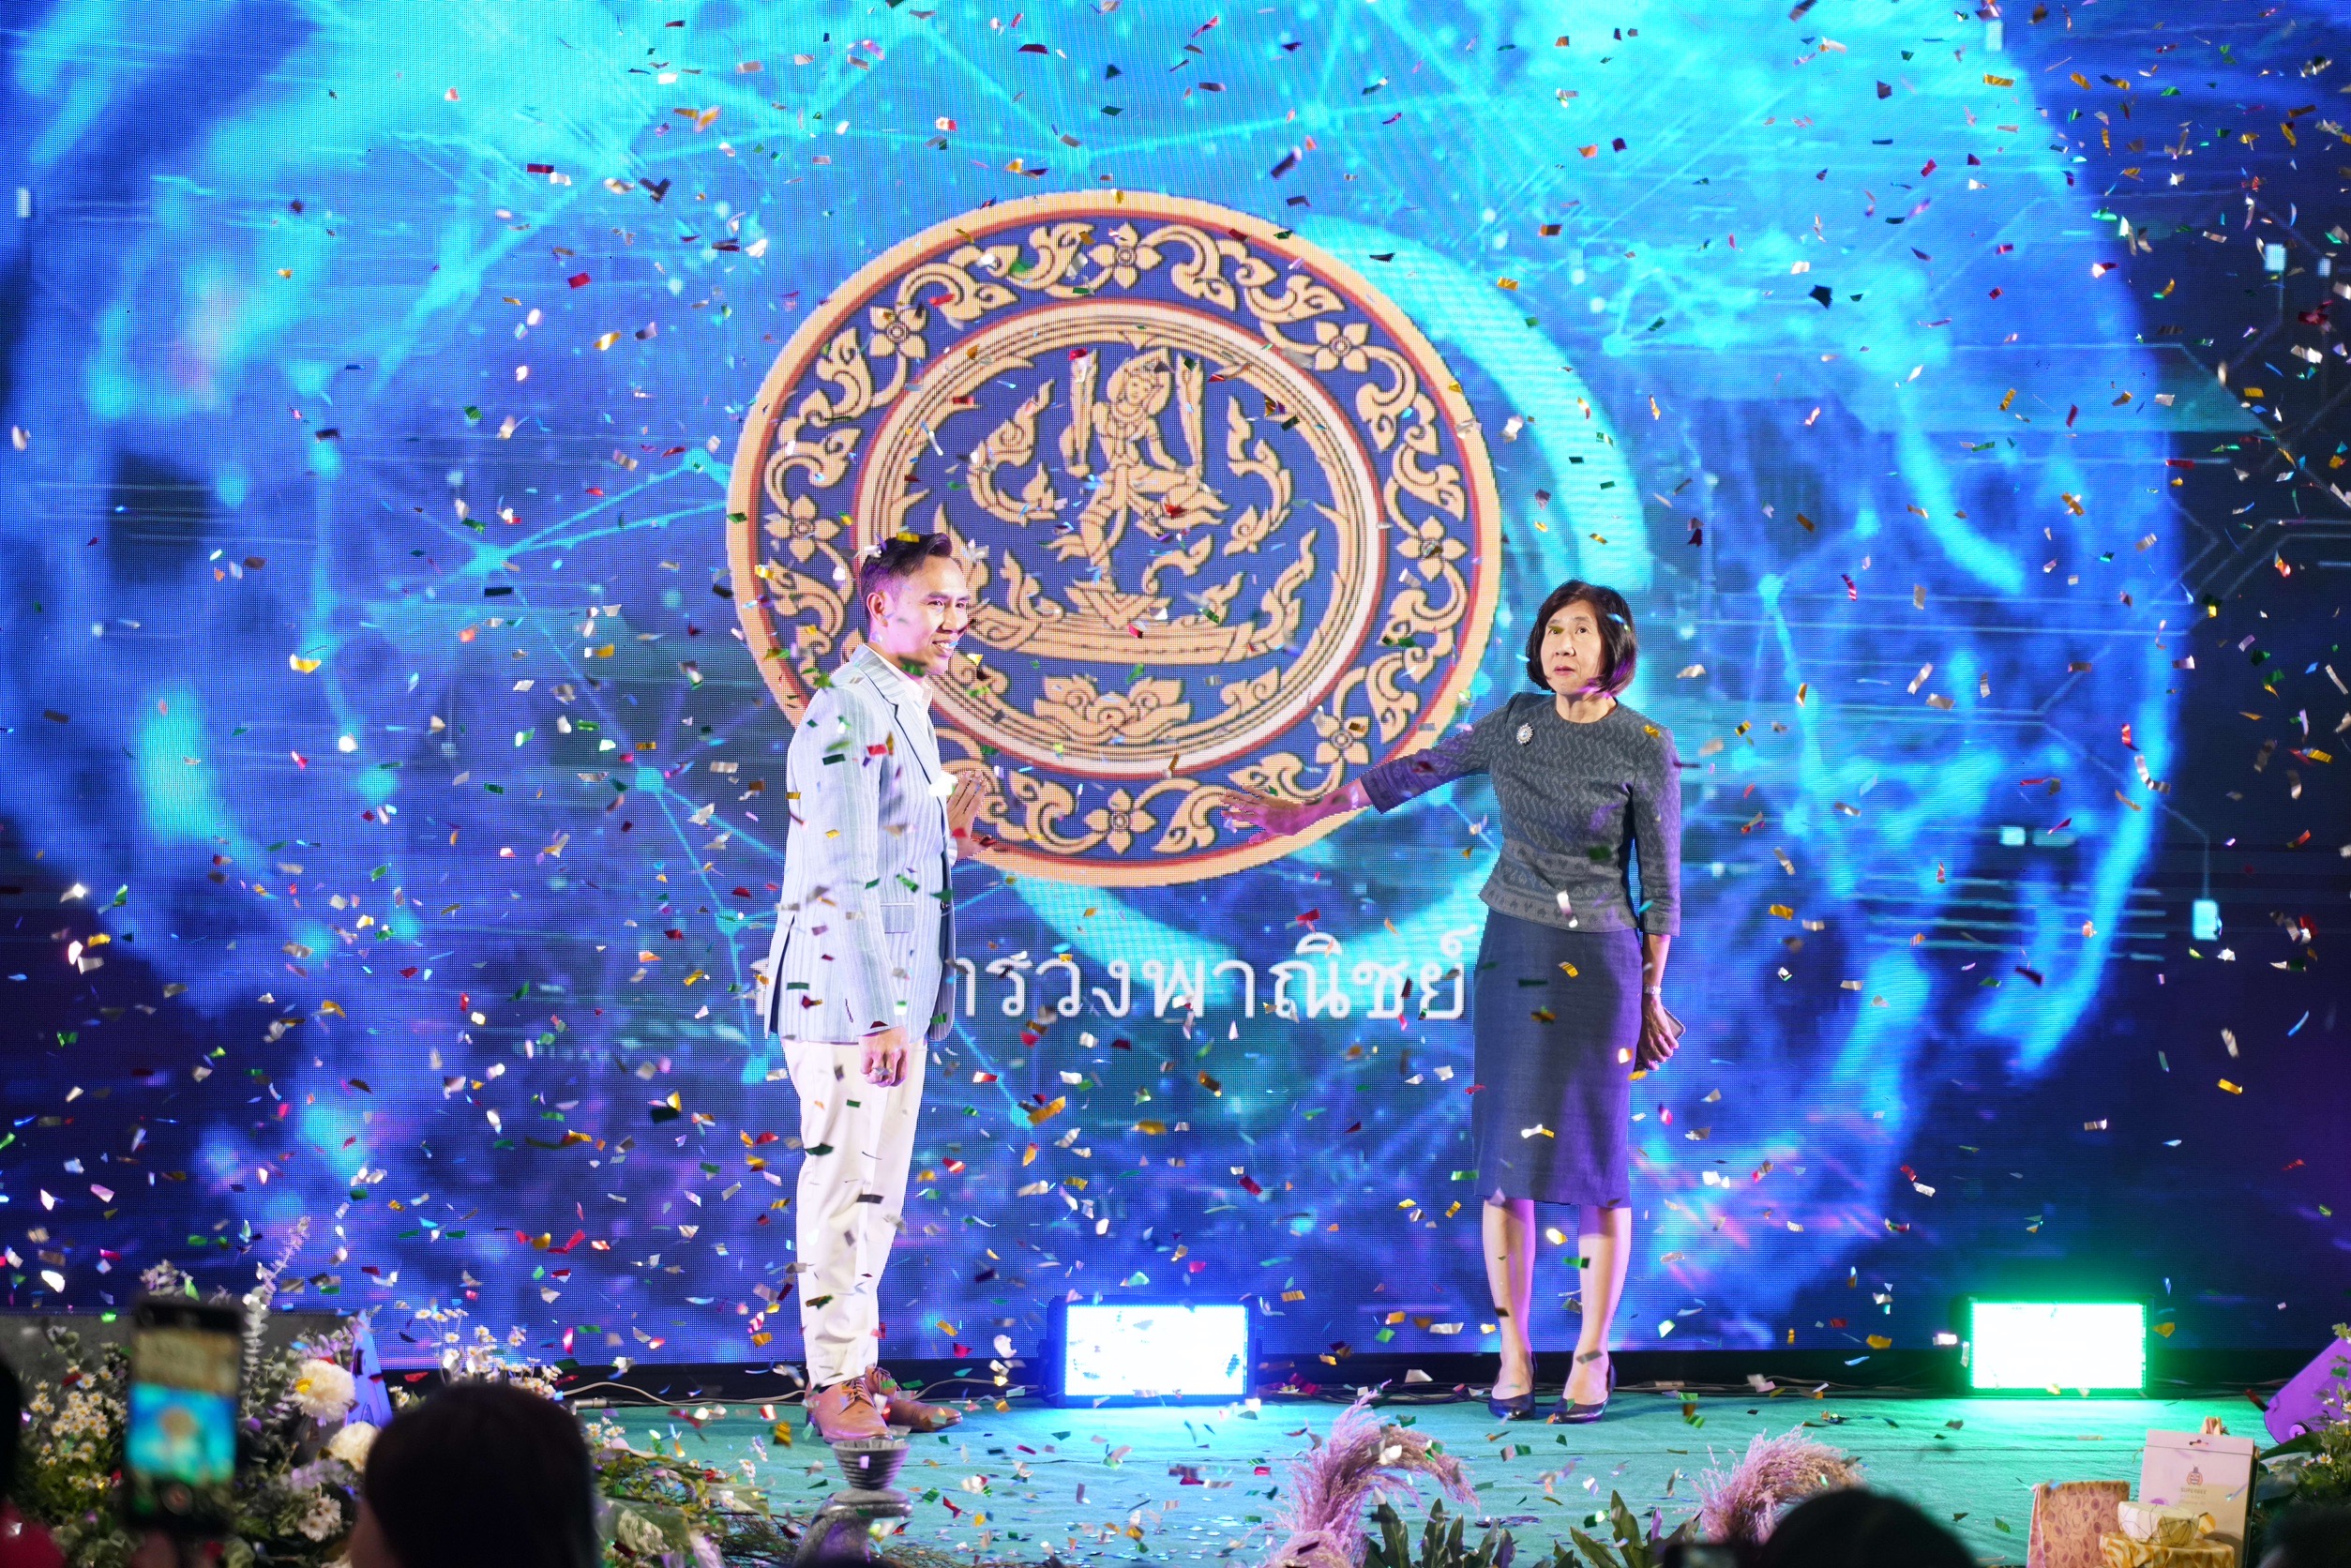 พาณิชย์จัดงาน Thailand Local BCG Plus Expo On tour ปีที่ 2 จัดเต็มตลอดเดือนกุมภาพันธ์ นำร่อง “เชียงใหม่” ประเดิมที่แรกคาดสร้างมูลค่าไม่น้อยกว่า 200 ล้านบาท